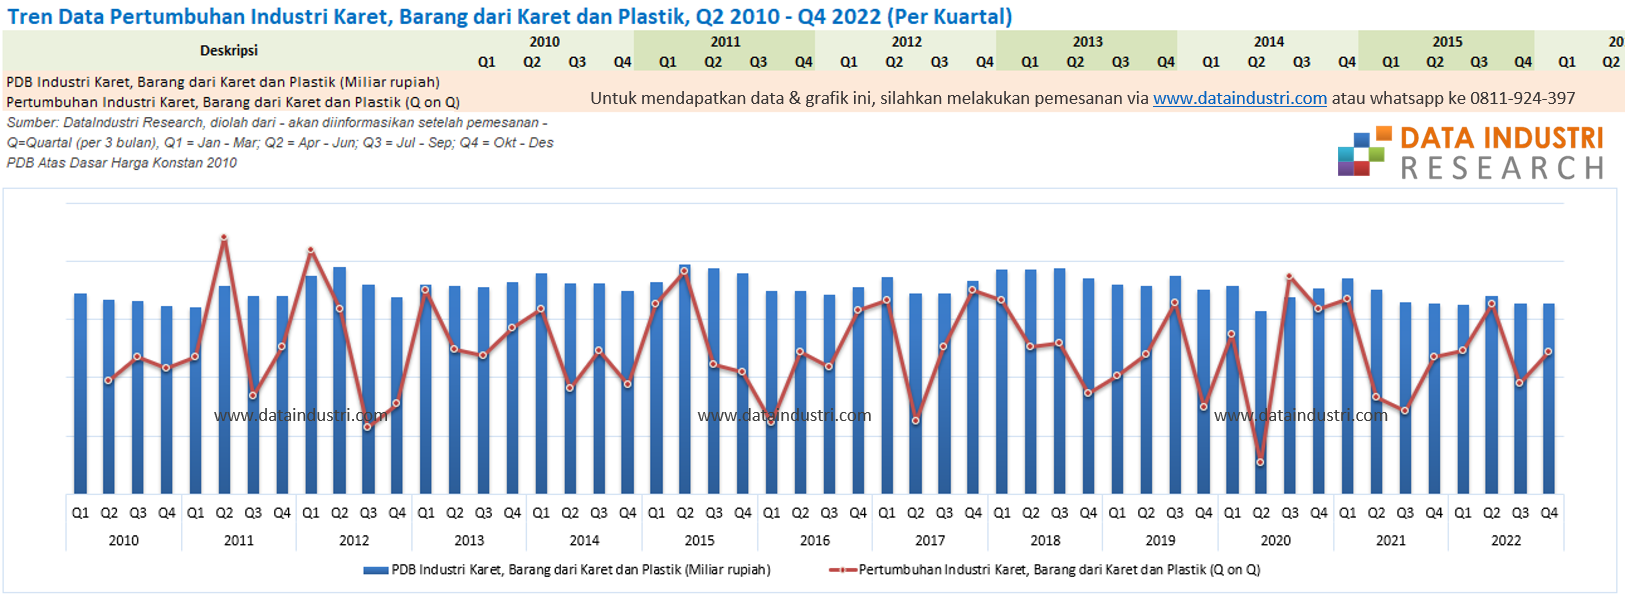 Tren Data Pertumbuhan Industri Karet, Barang dari Karet dan Plastik, Q2 2010 - Q4 2022